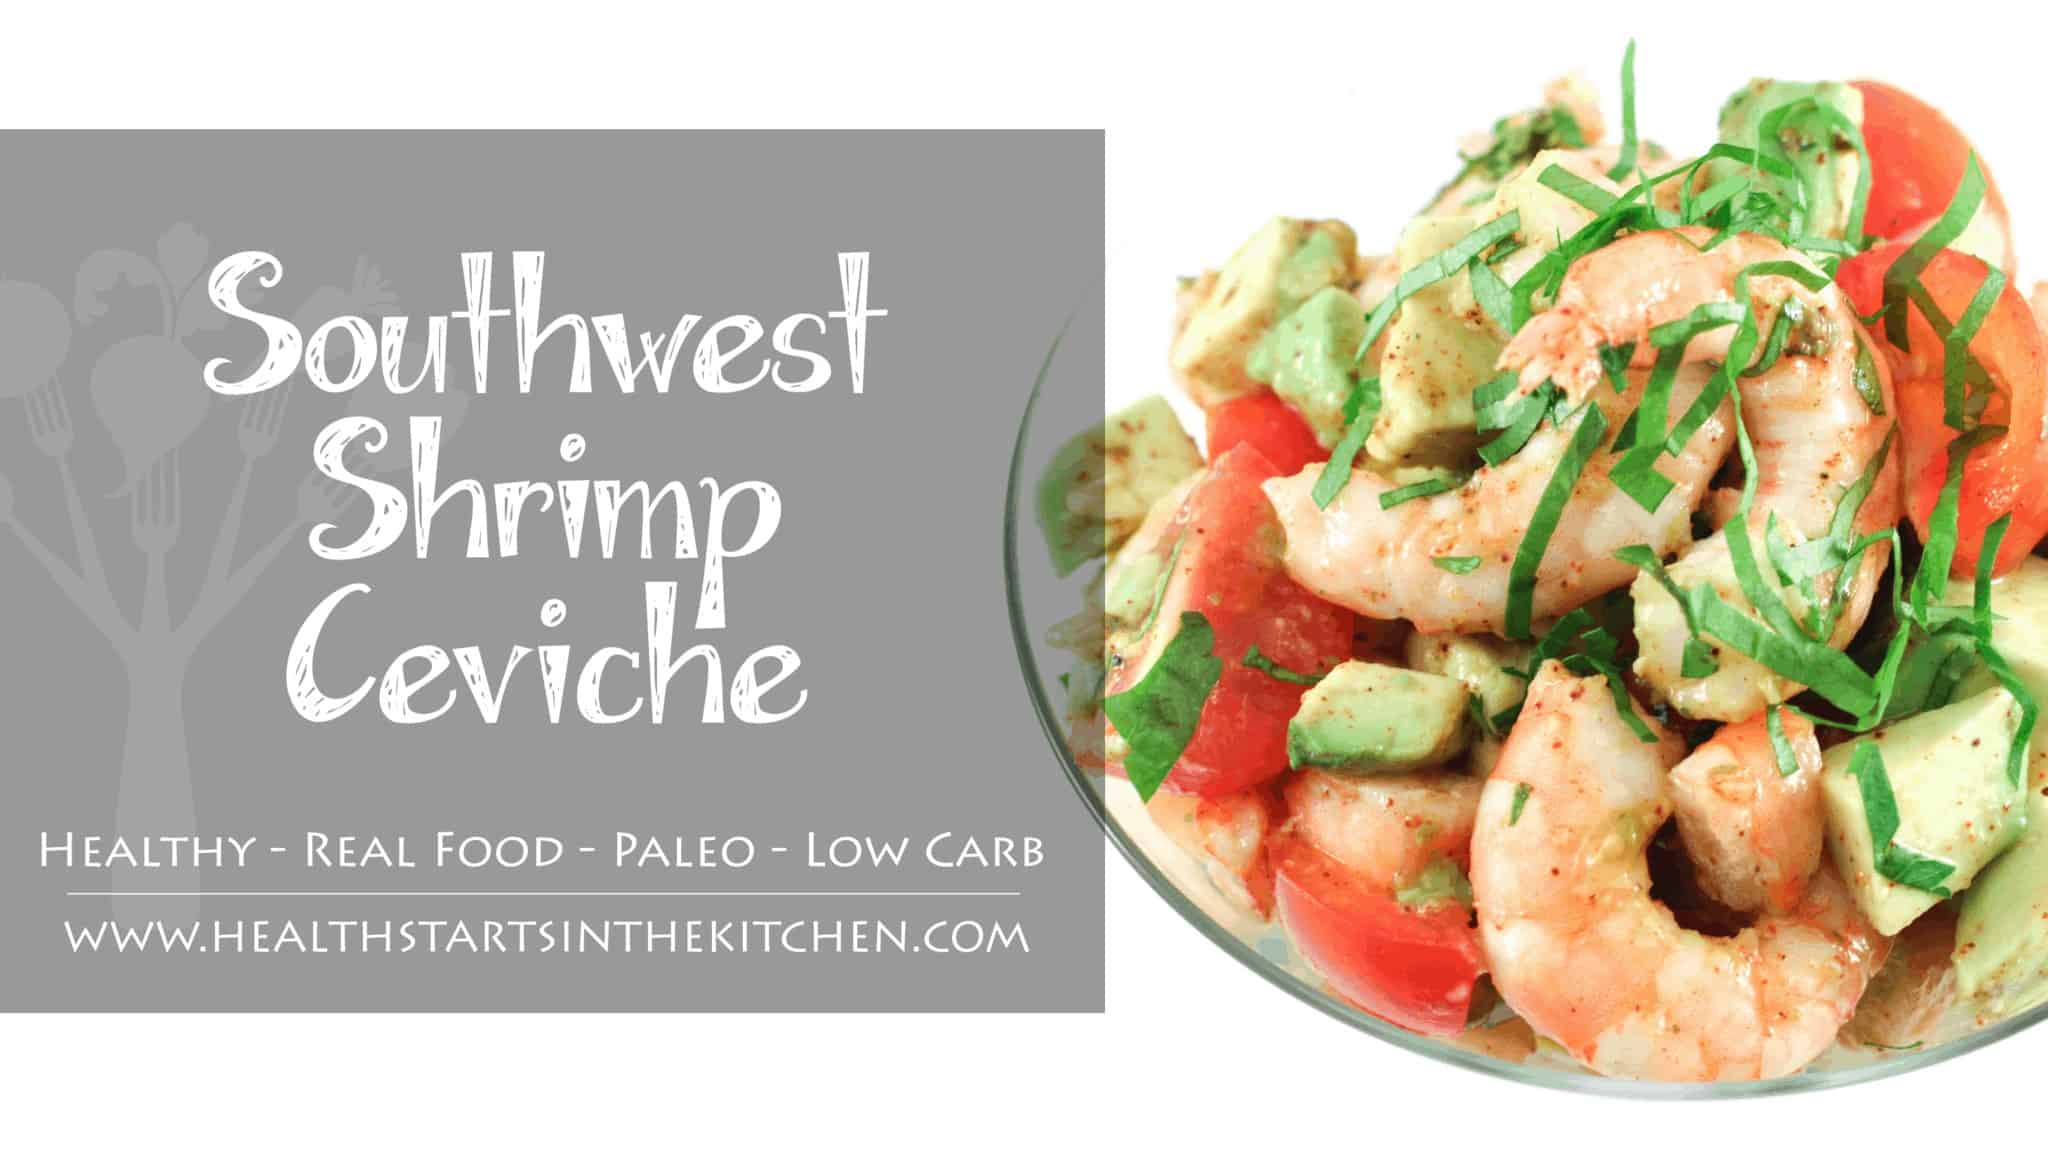 Southwest Shrimp Ceviche